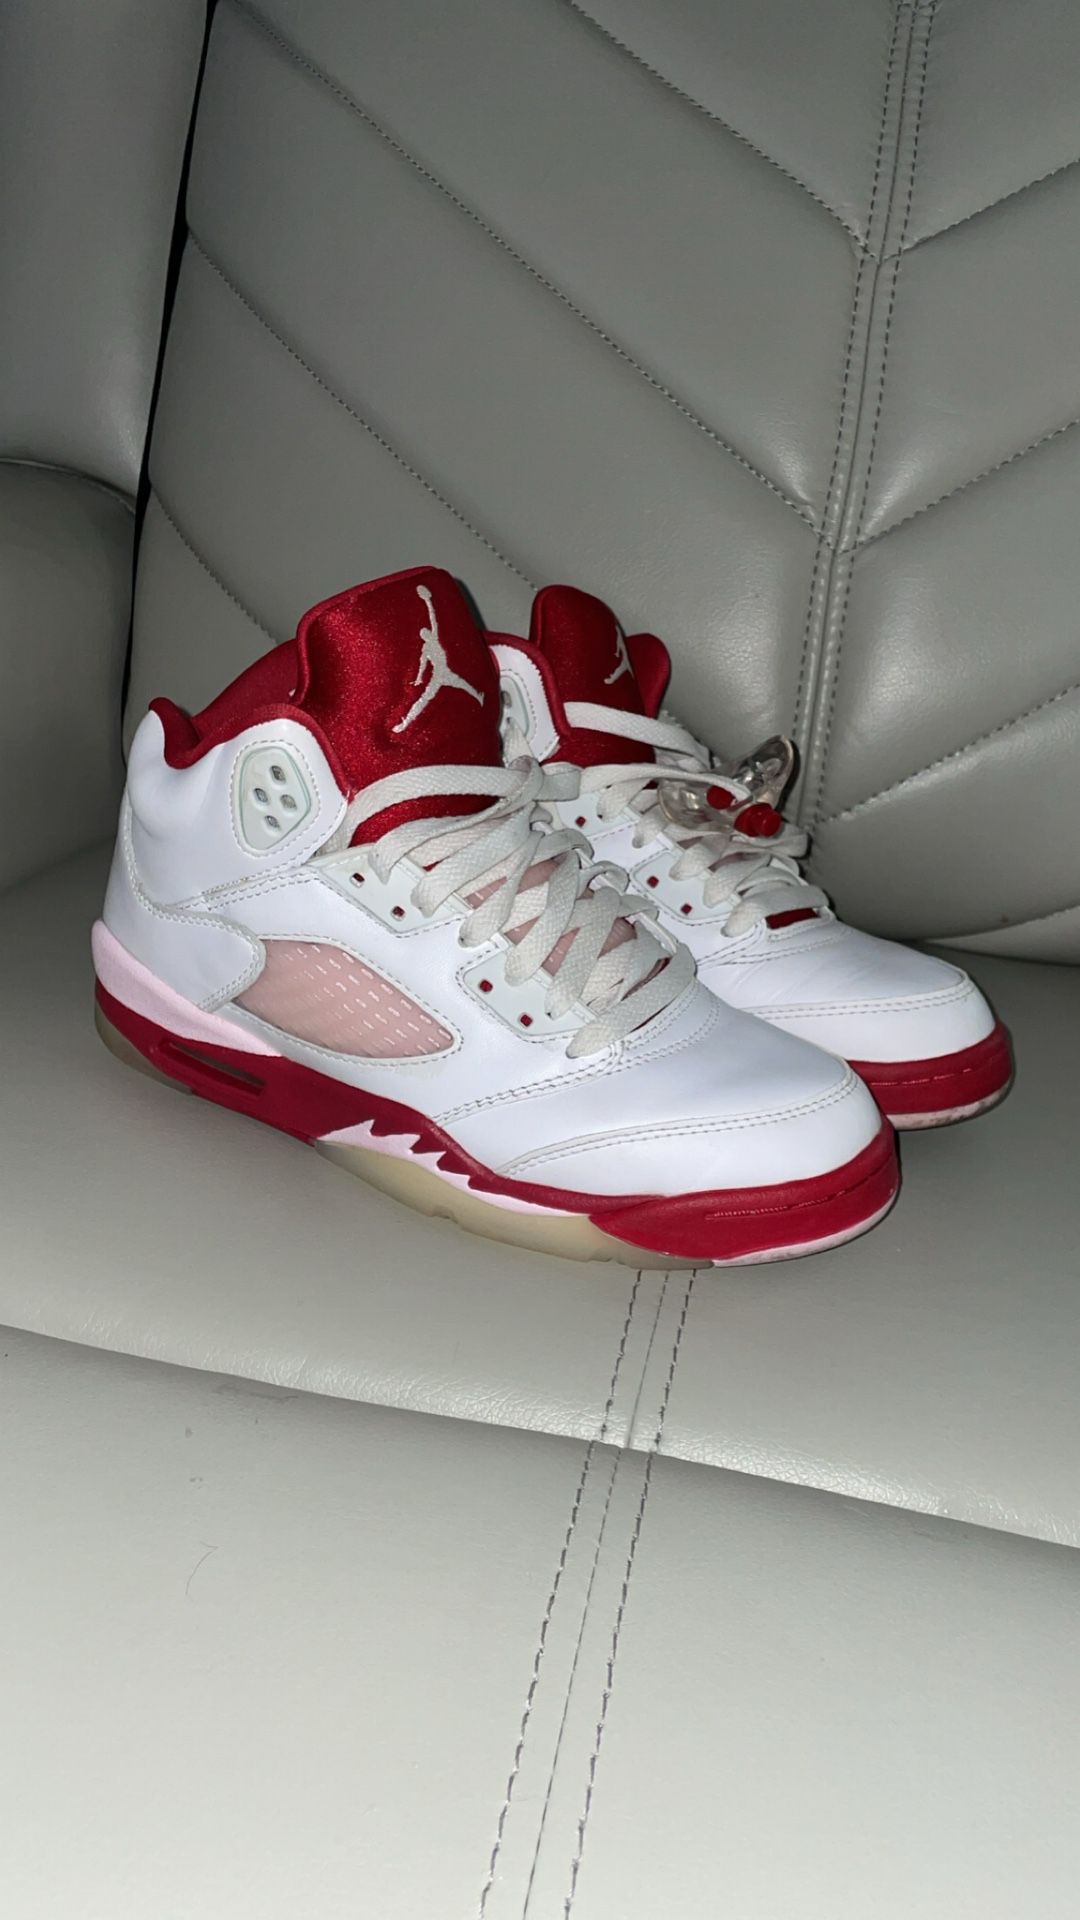 Jordan 5 Retro White Pink Red